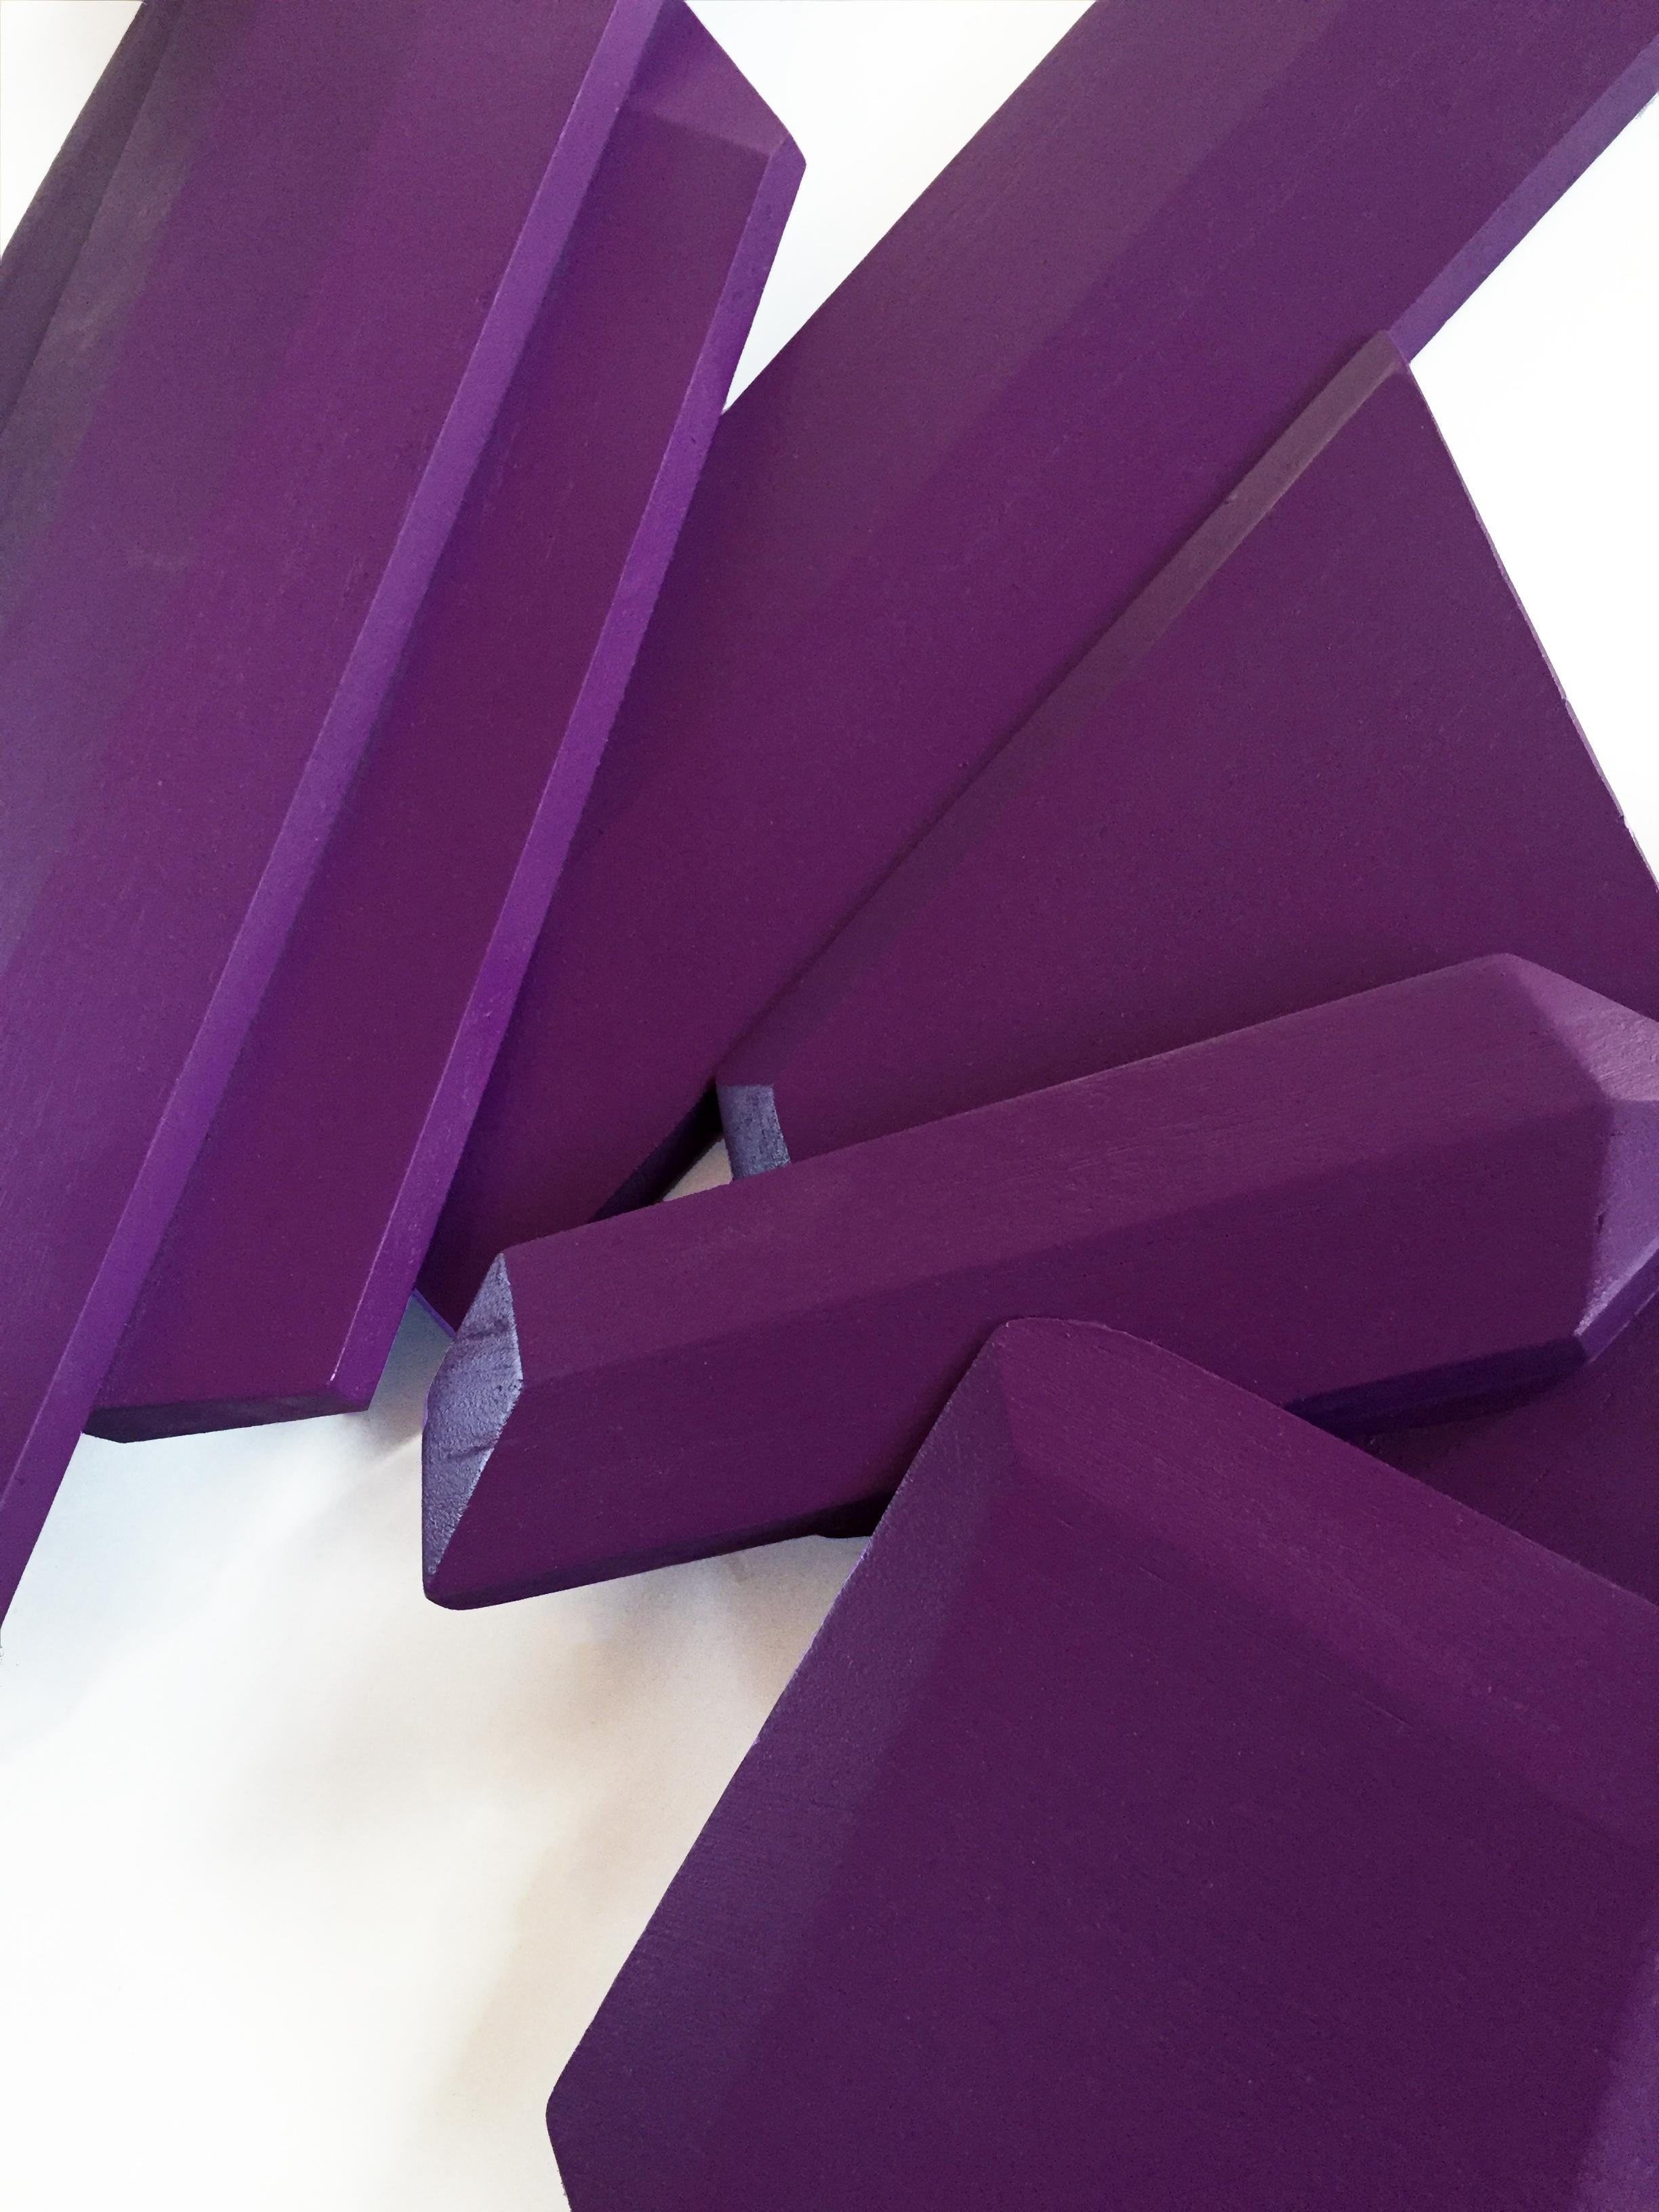 Ultra Violet Crystal (Holz, zeitgenössisches Design, geometrisch, violett, Skulptur) – Sculpture von Chloe Hedden